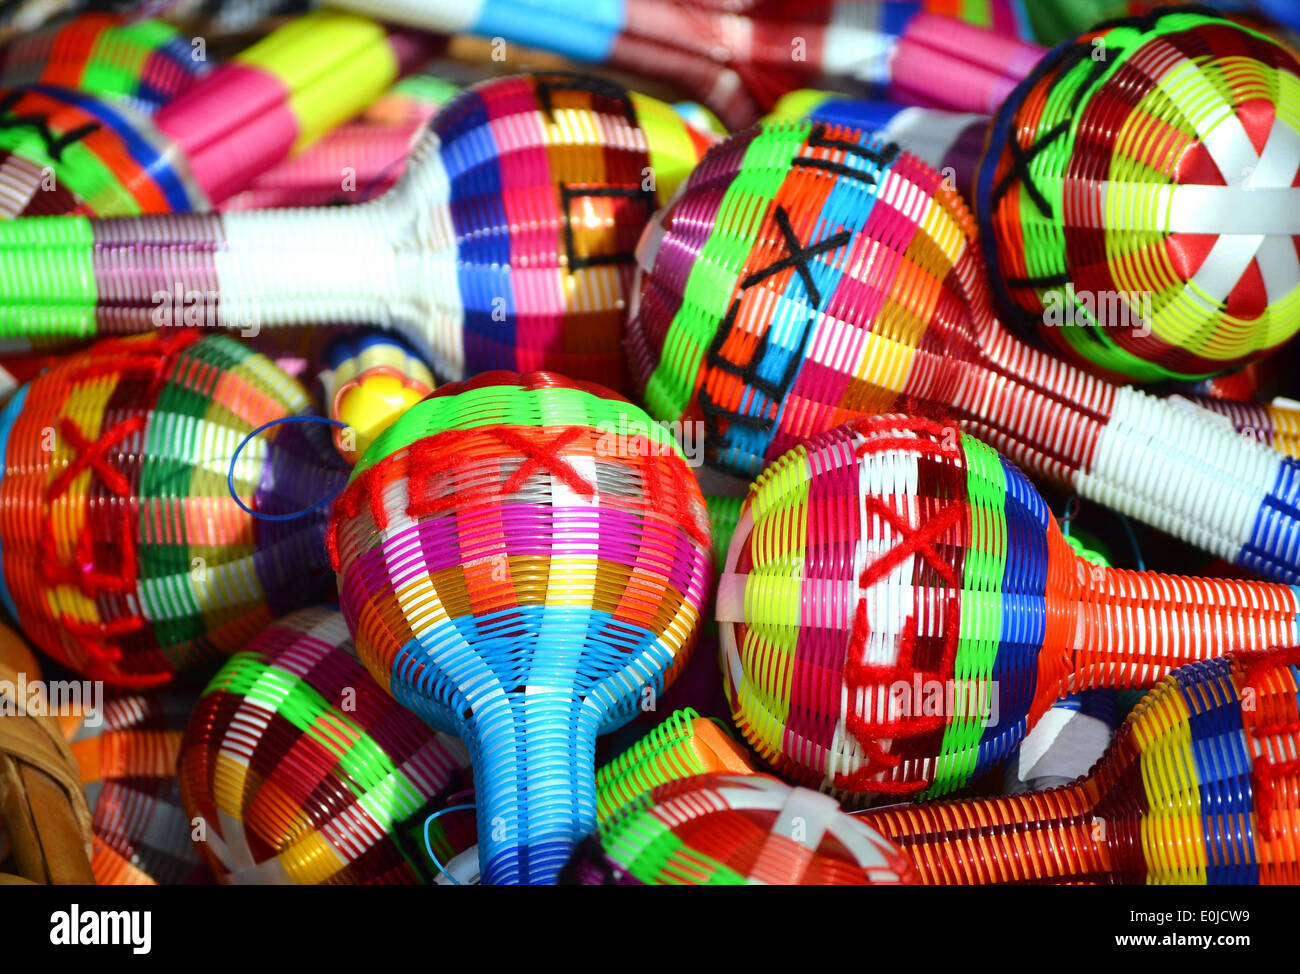 Farbenfrohe Maracas aus Mexiko Stockfoto